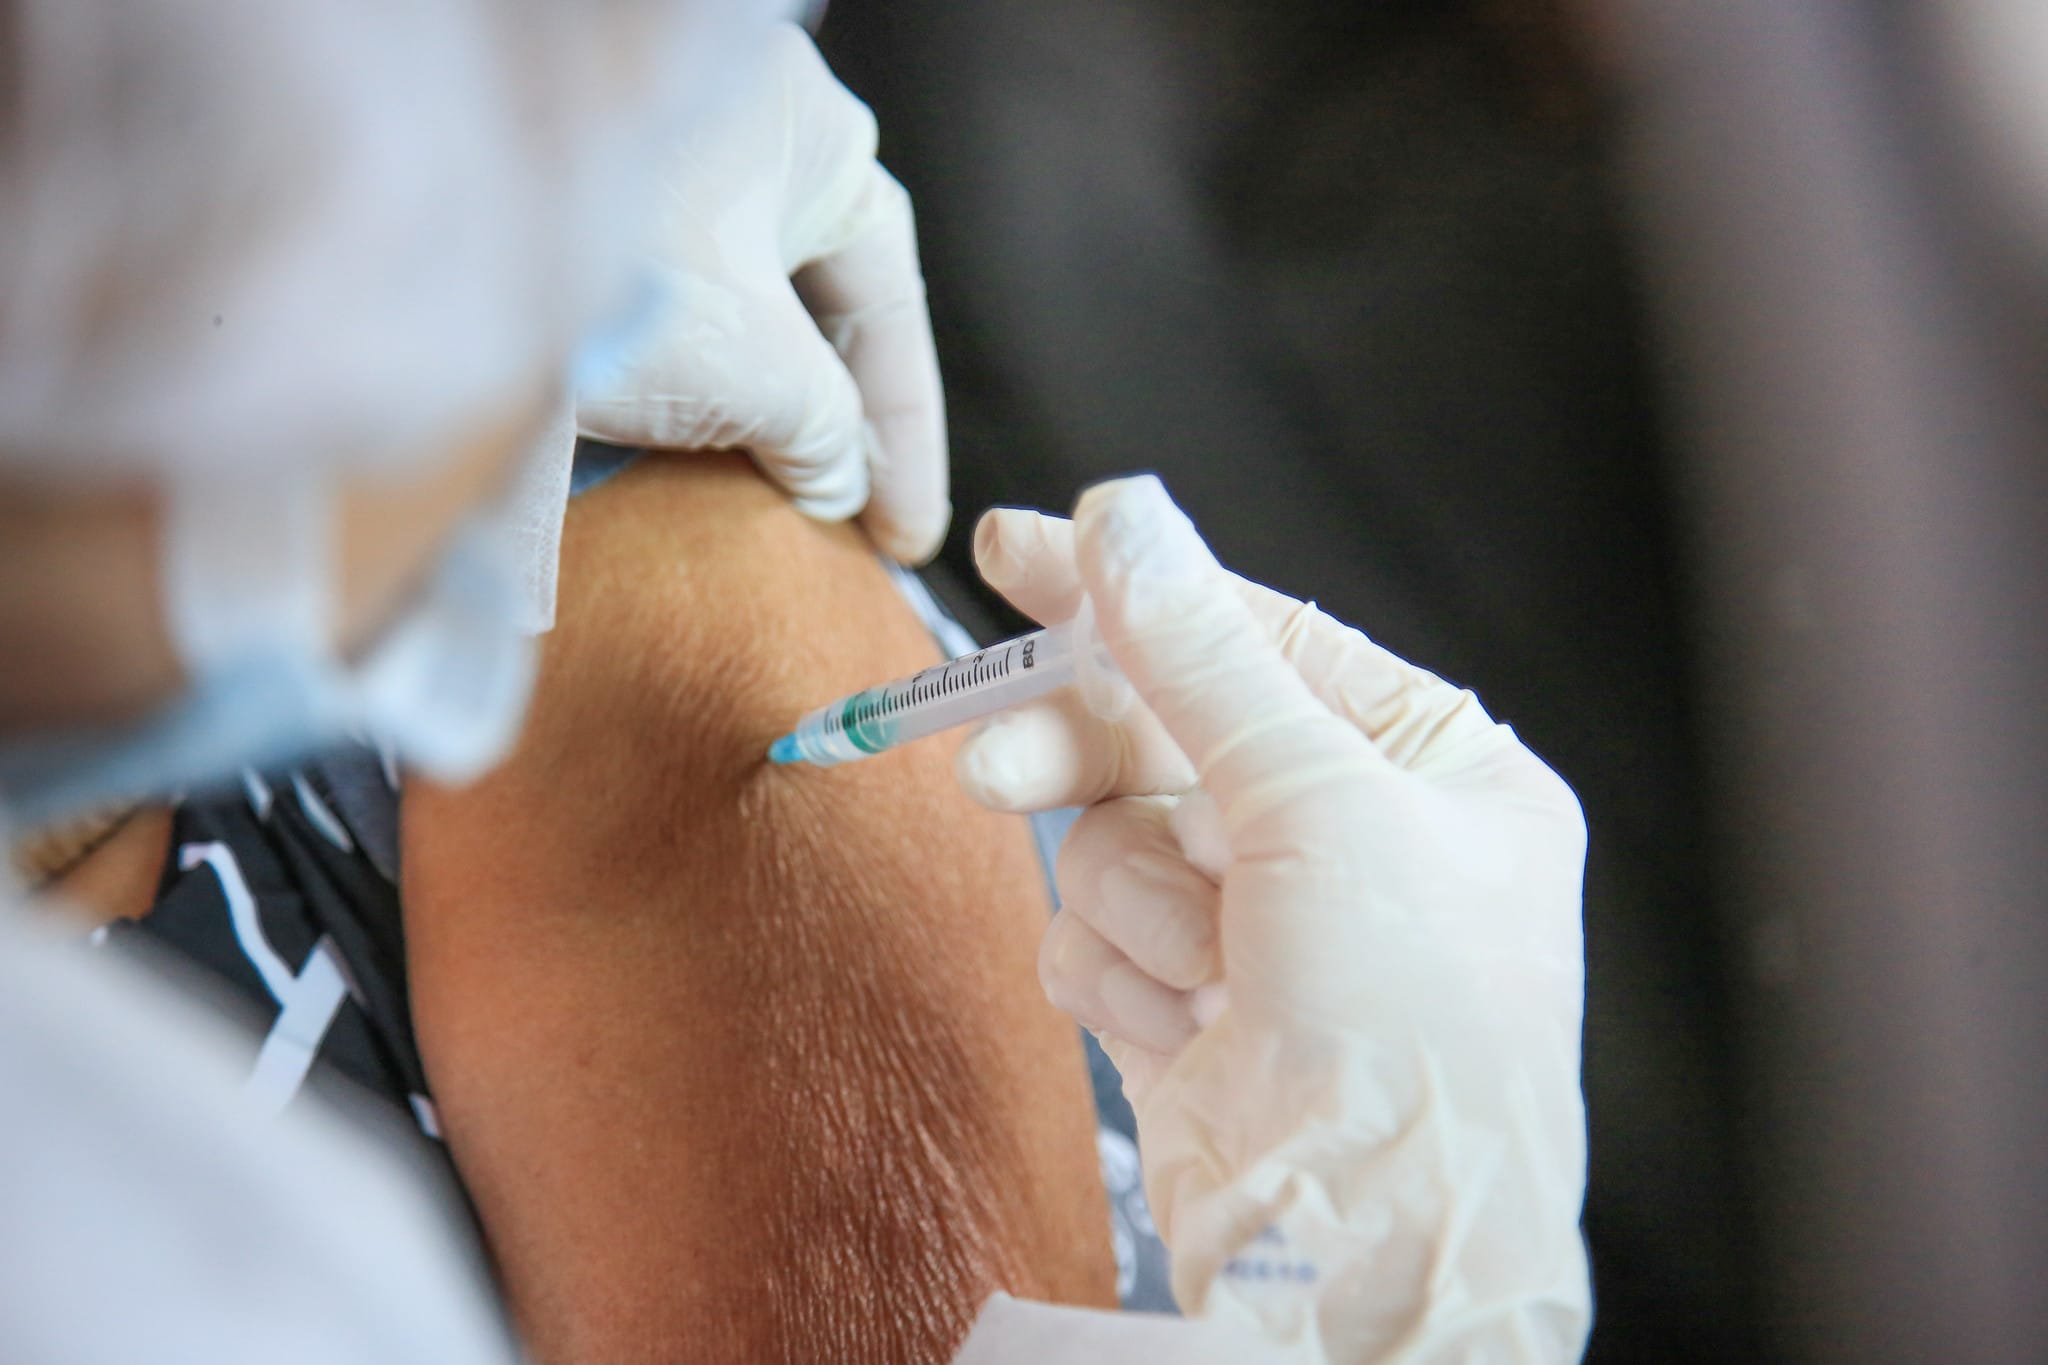 Prefeitura de Natal nega vacinação para idosos acamados não restritos a leito